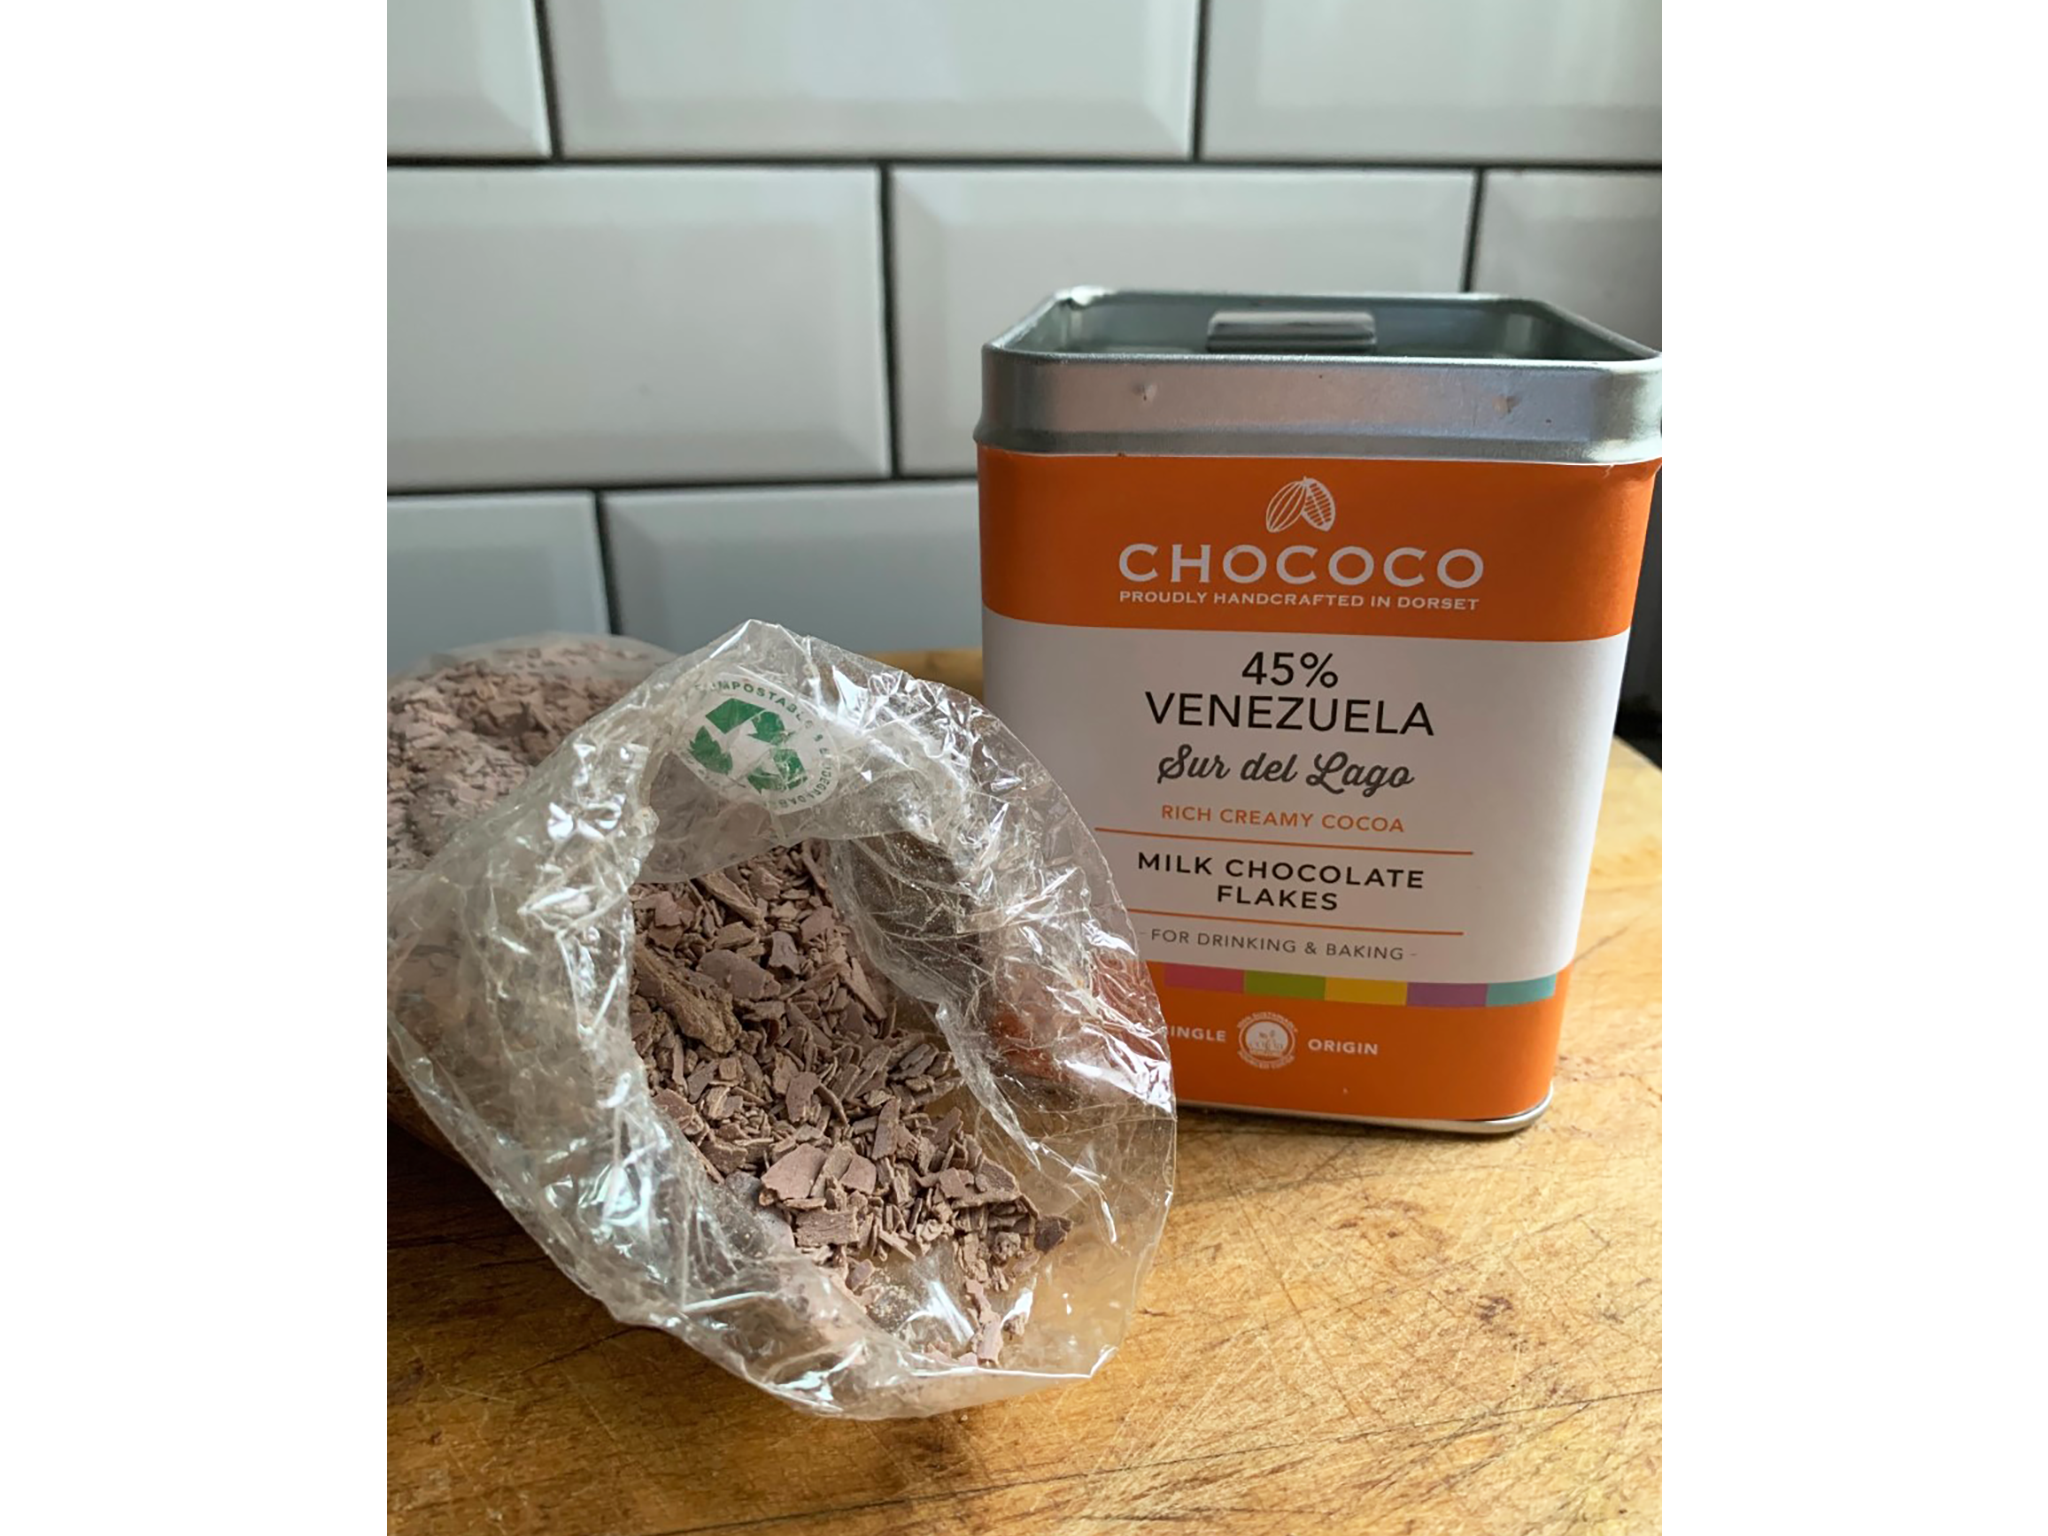 Chococo Venezuelan origin milk hot chocolate flakes tin